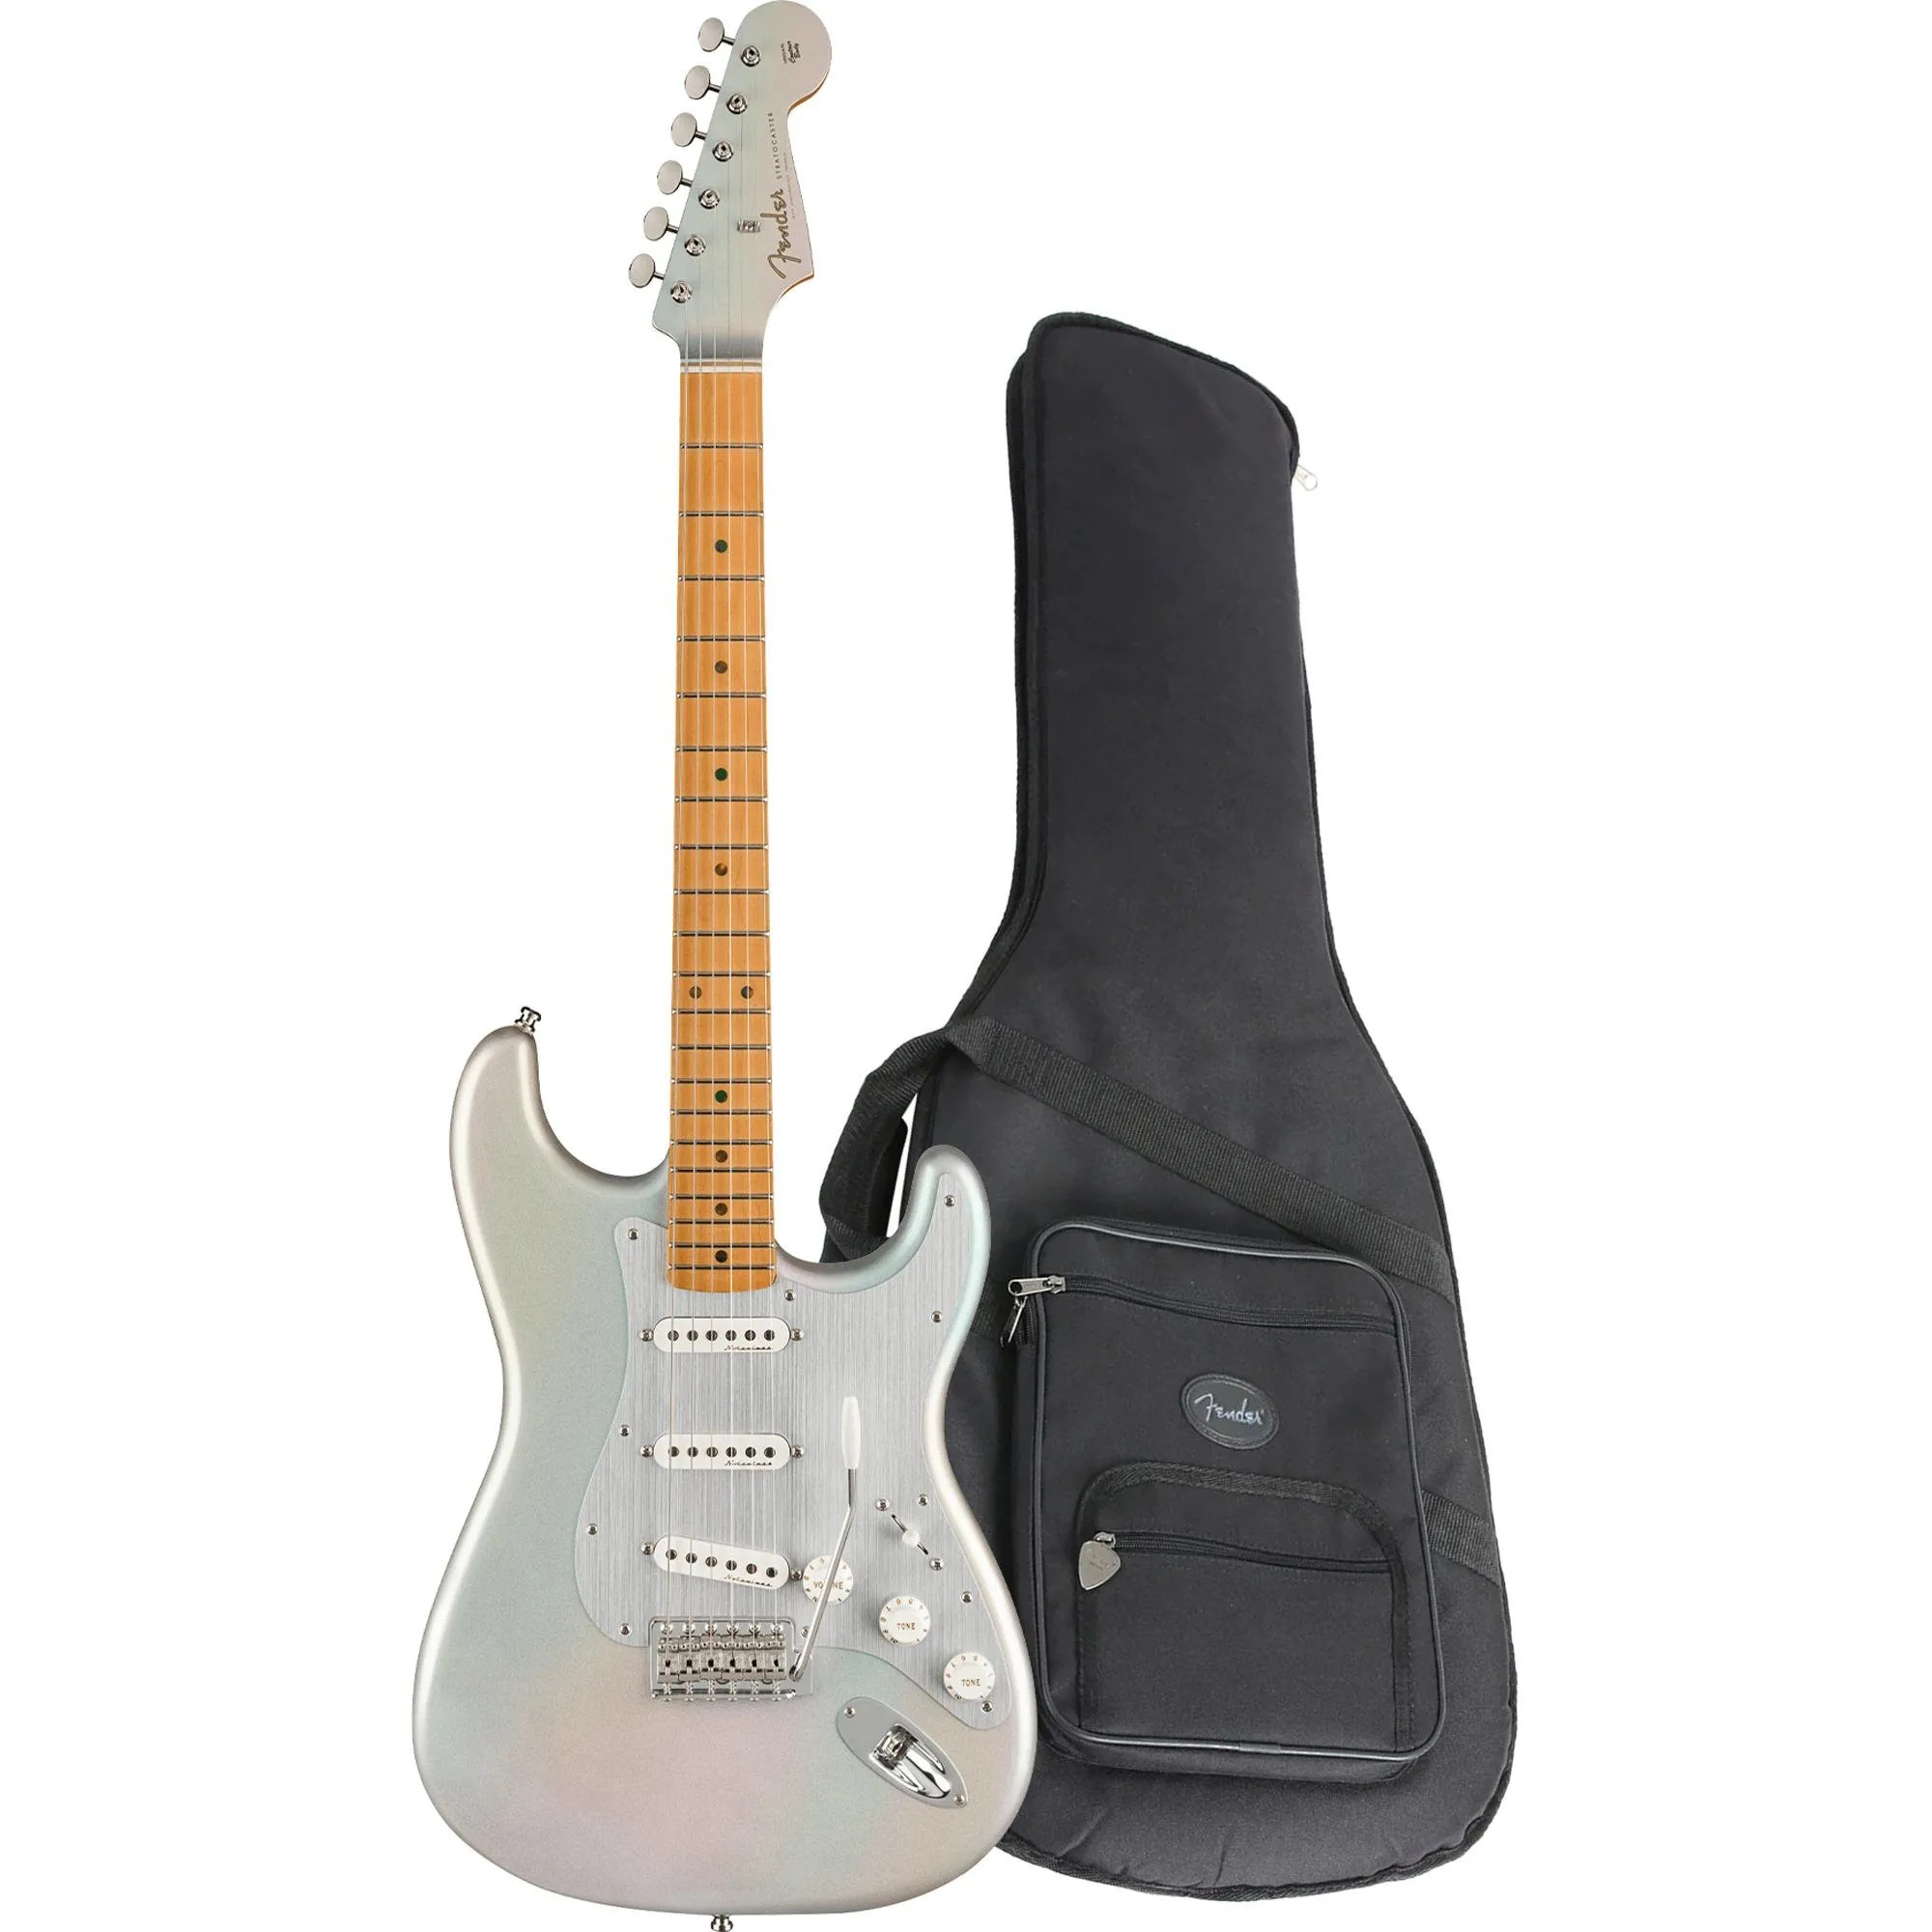 Guitarra Fender Stratocaster H.E.R Chrome Glow com Bag por 10.430,00 à vista no boleto/pix ou parcele em até 12x sem juros. Compre na loja Mundomax!